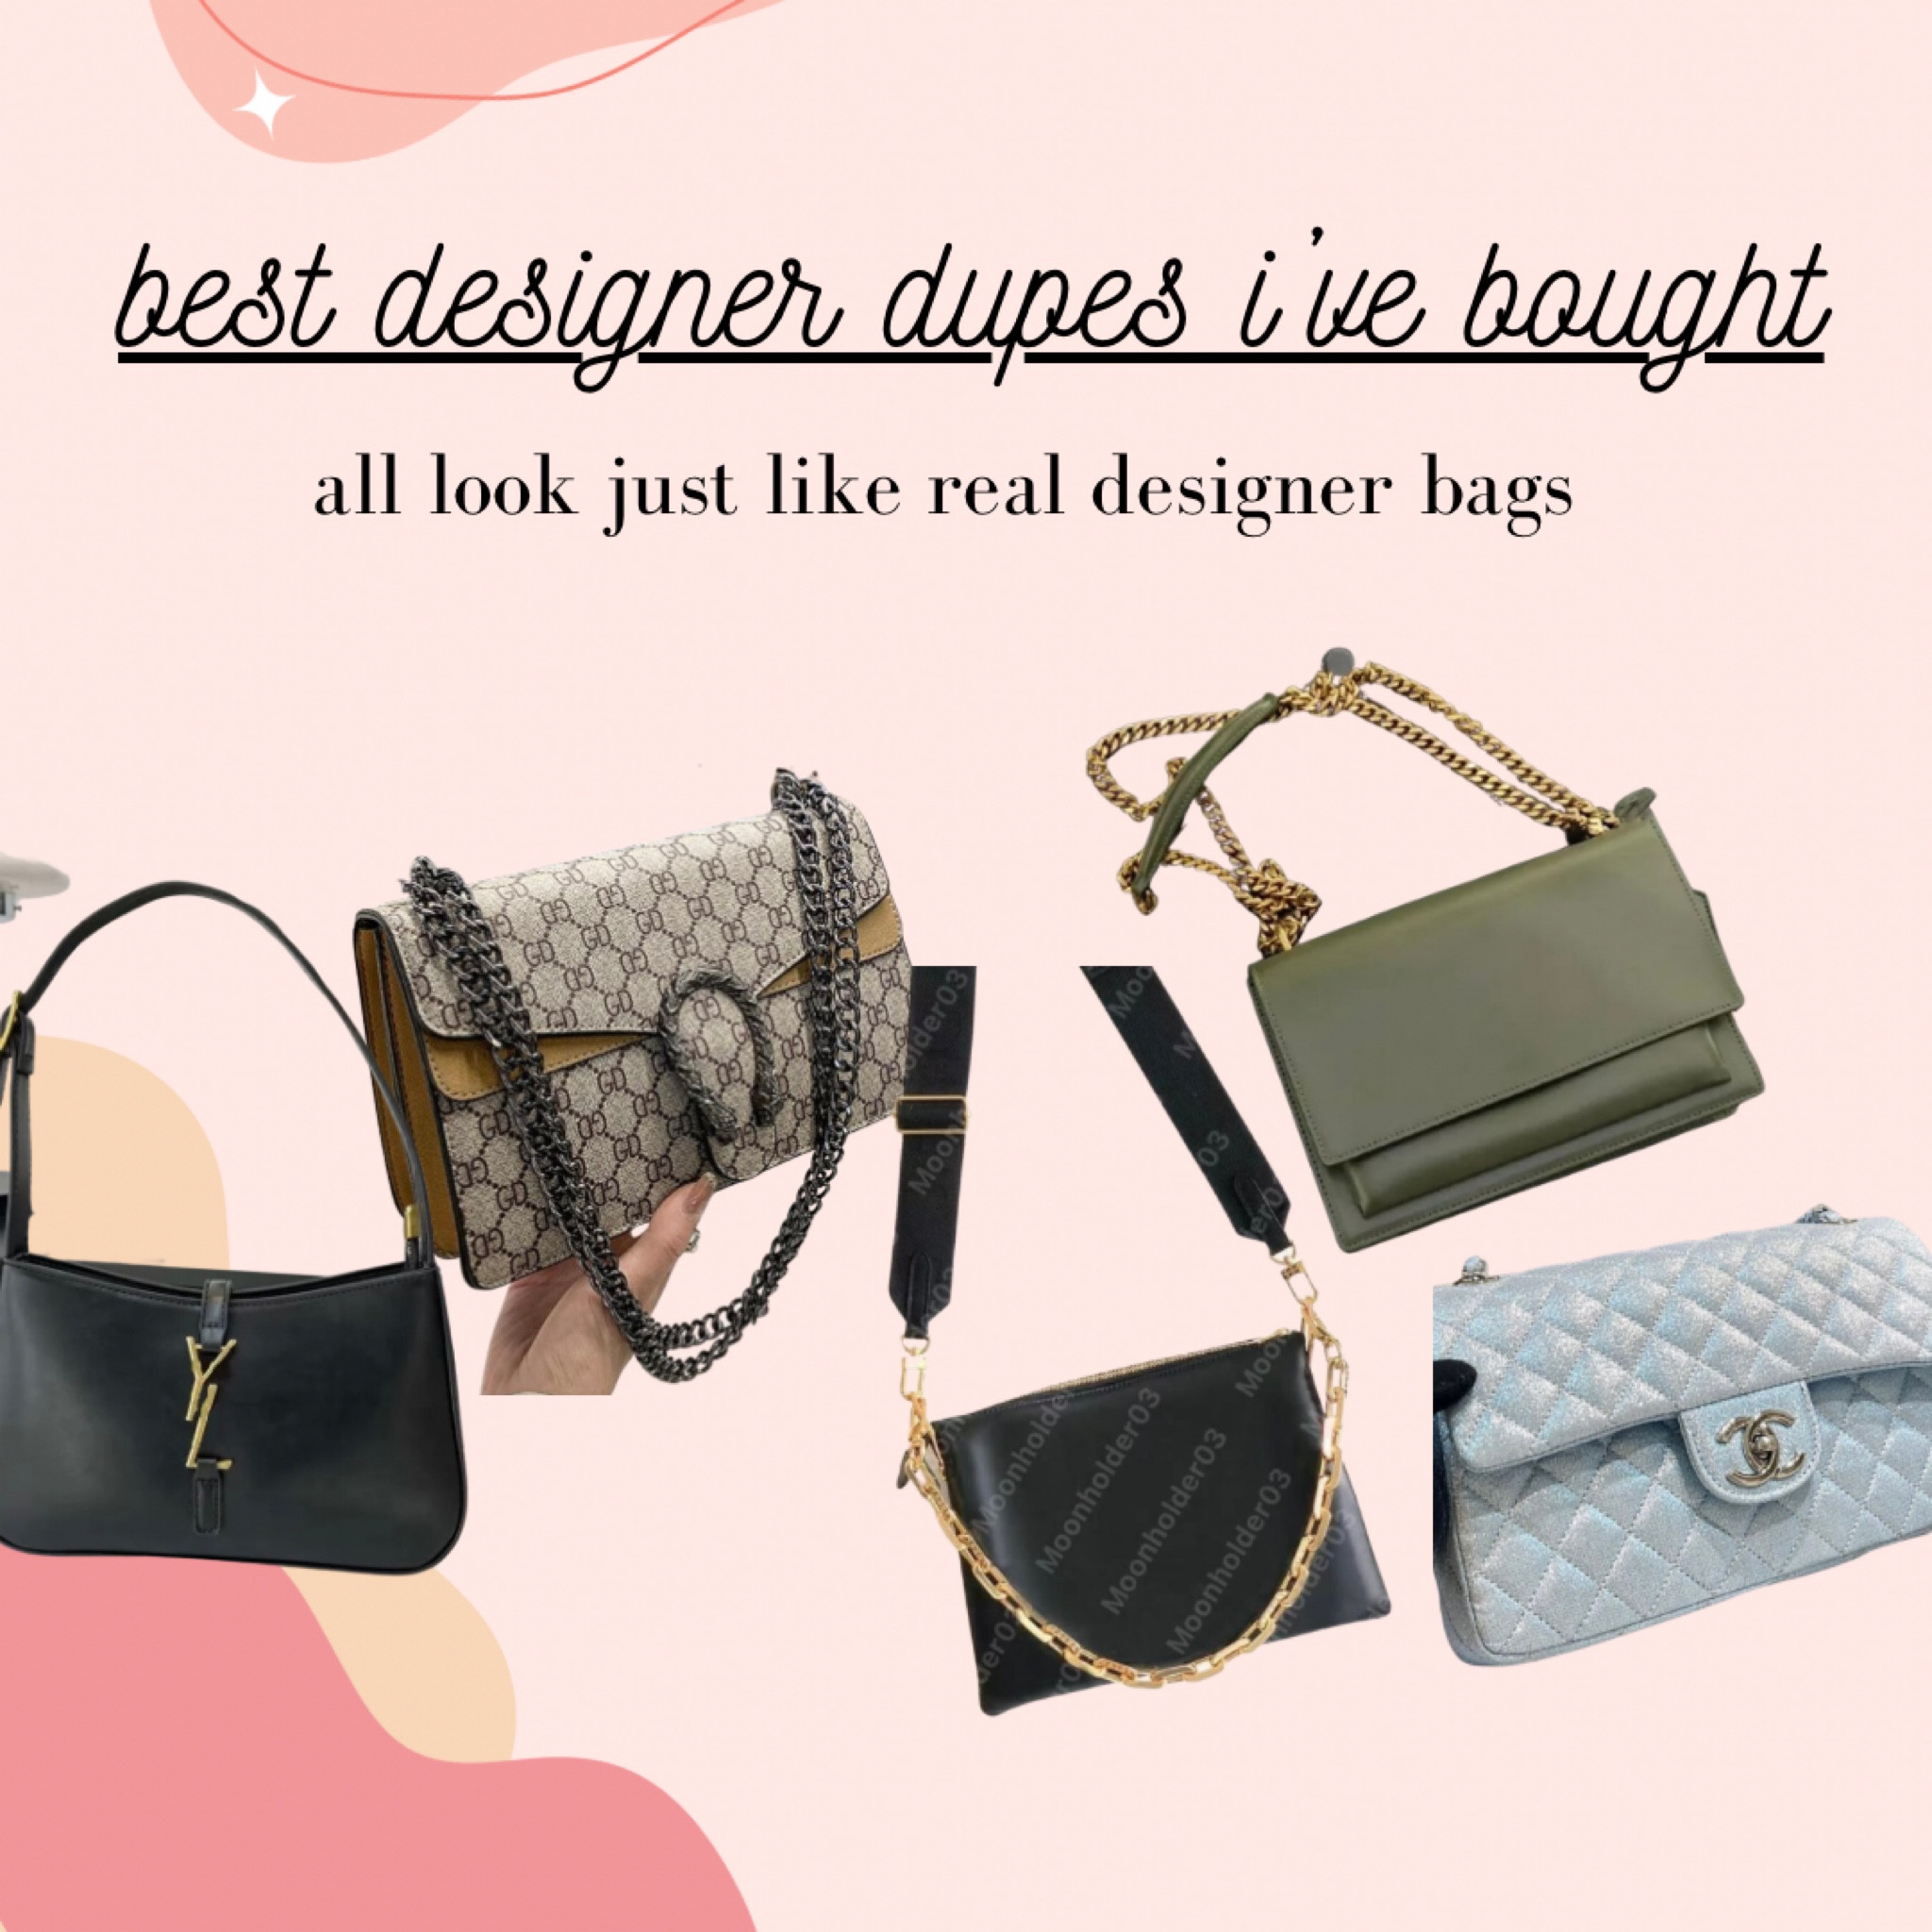 Where to find the best designer handbag dupes?